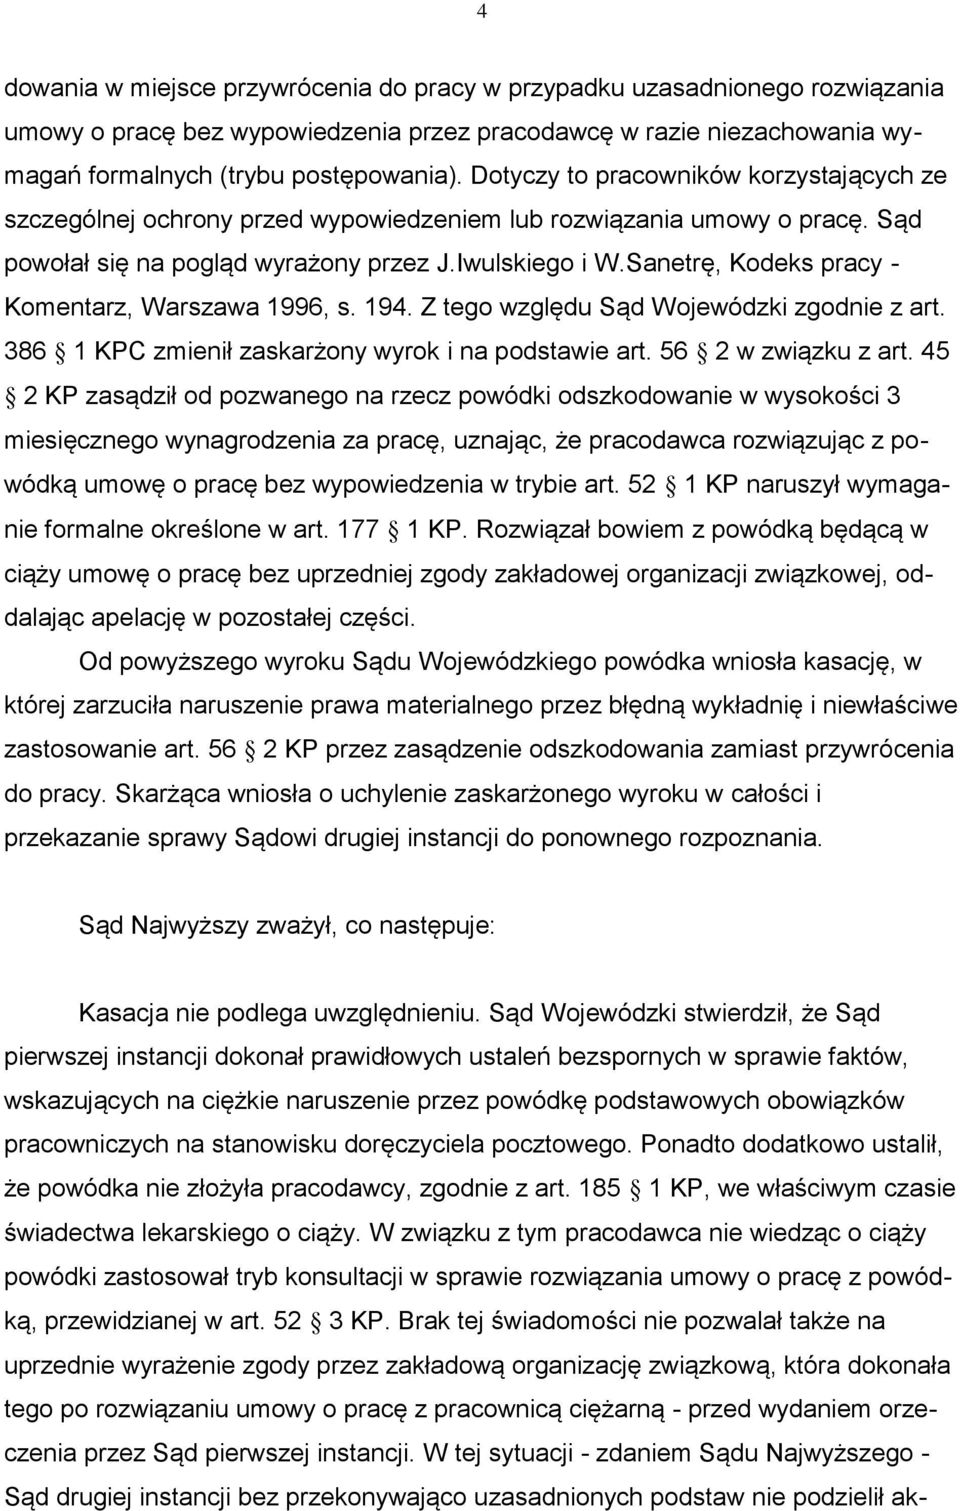 Sanetrę, Kodeks pracy - Komentarz, Warszawa 1996, s. 194. Z tego względu Sąd Wojewódzki zgodnie z art. 386 1 KPC zmienił zaskarżony wyrok i na podstawie art. 56 2 w związku z art.